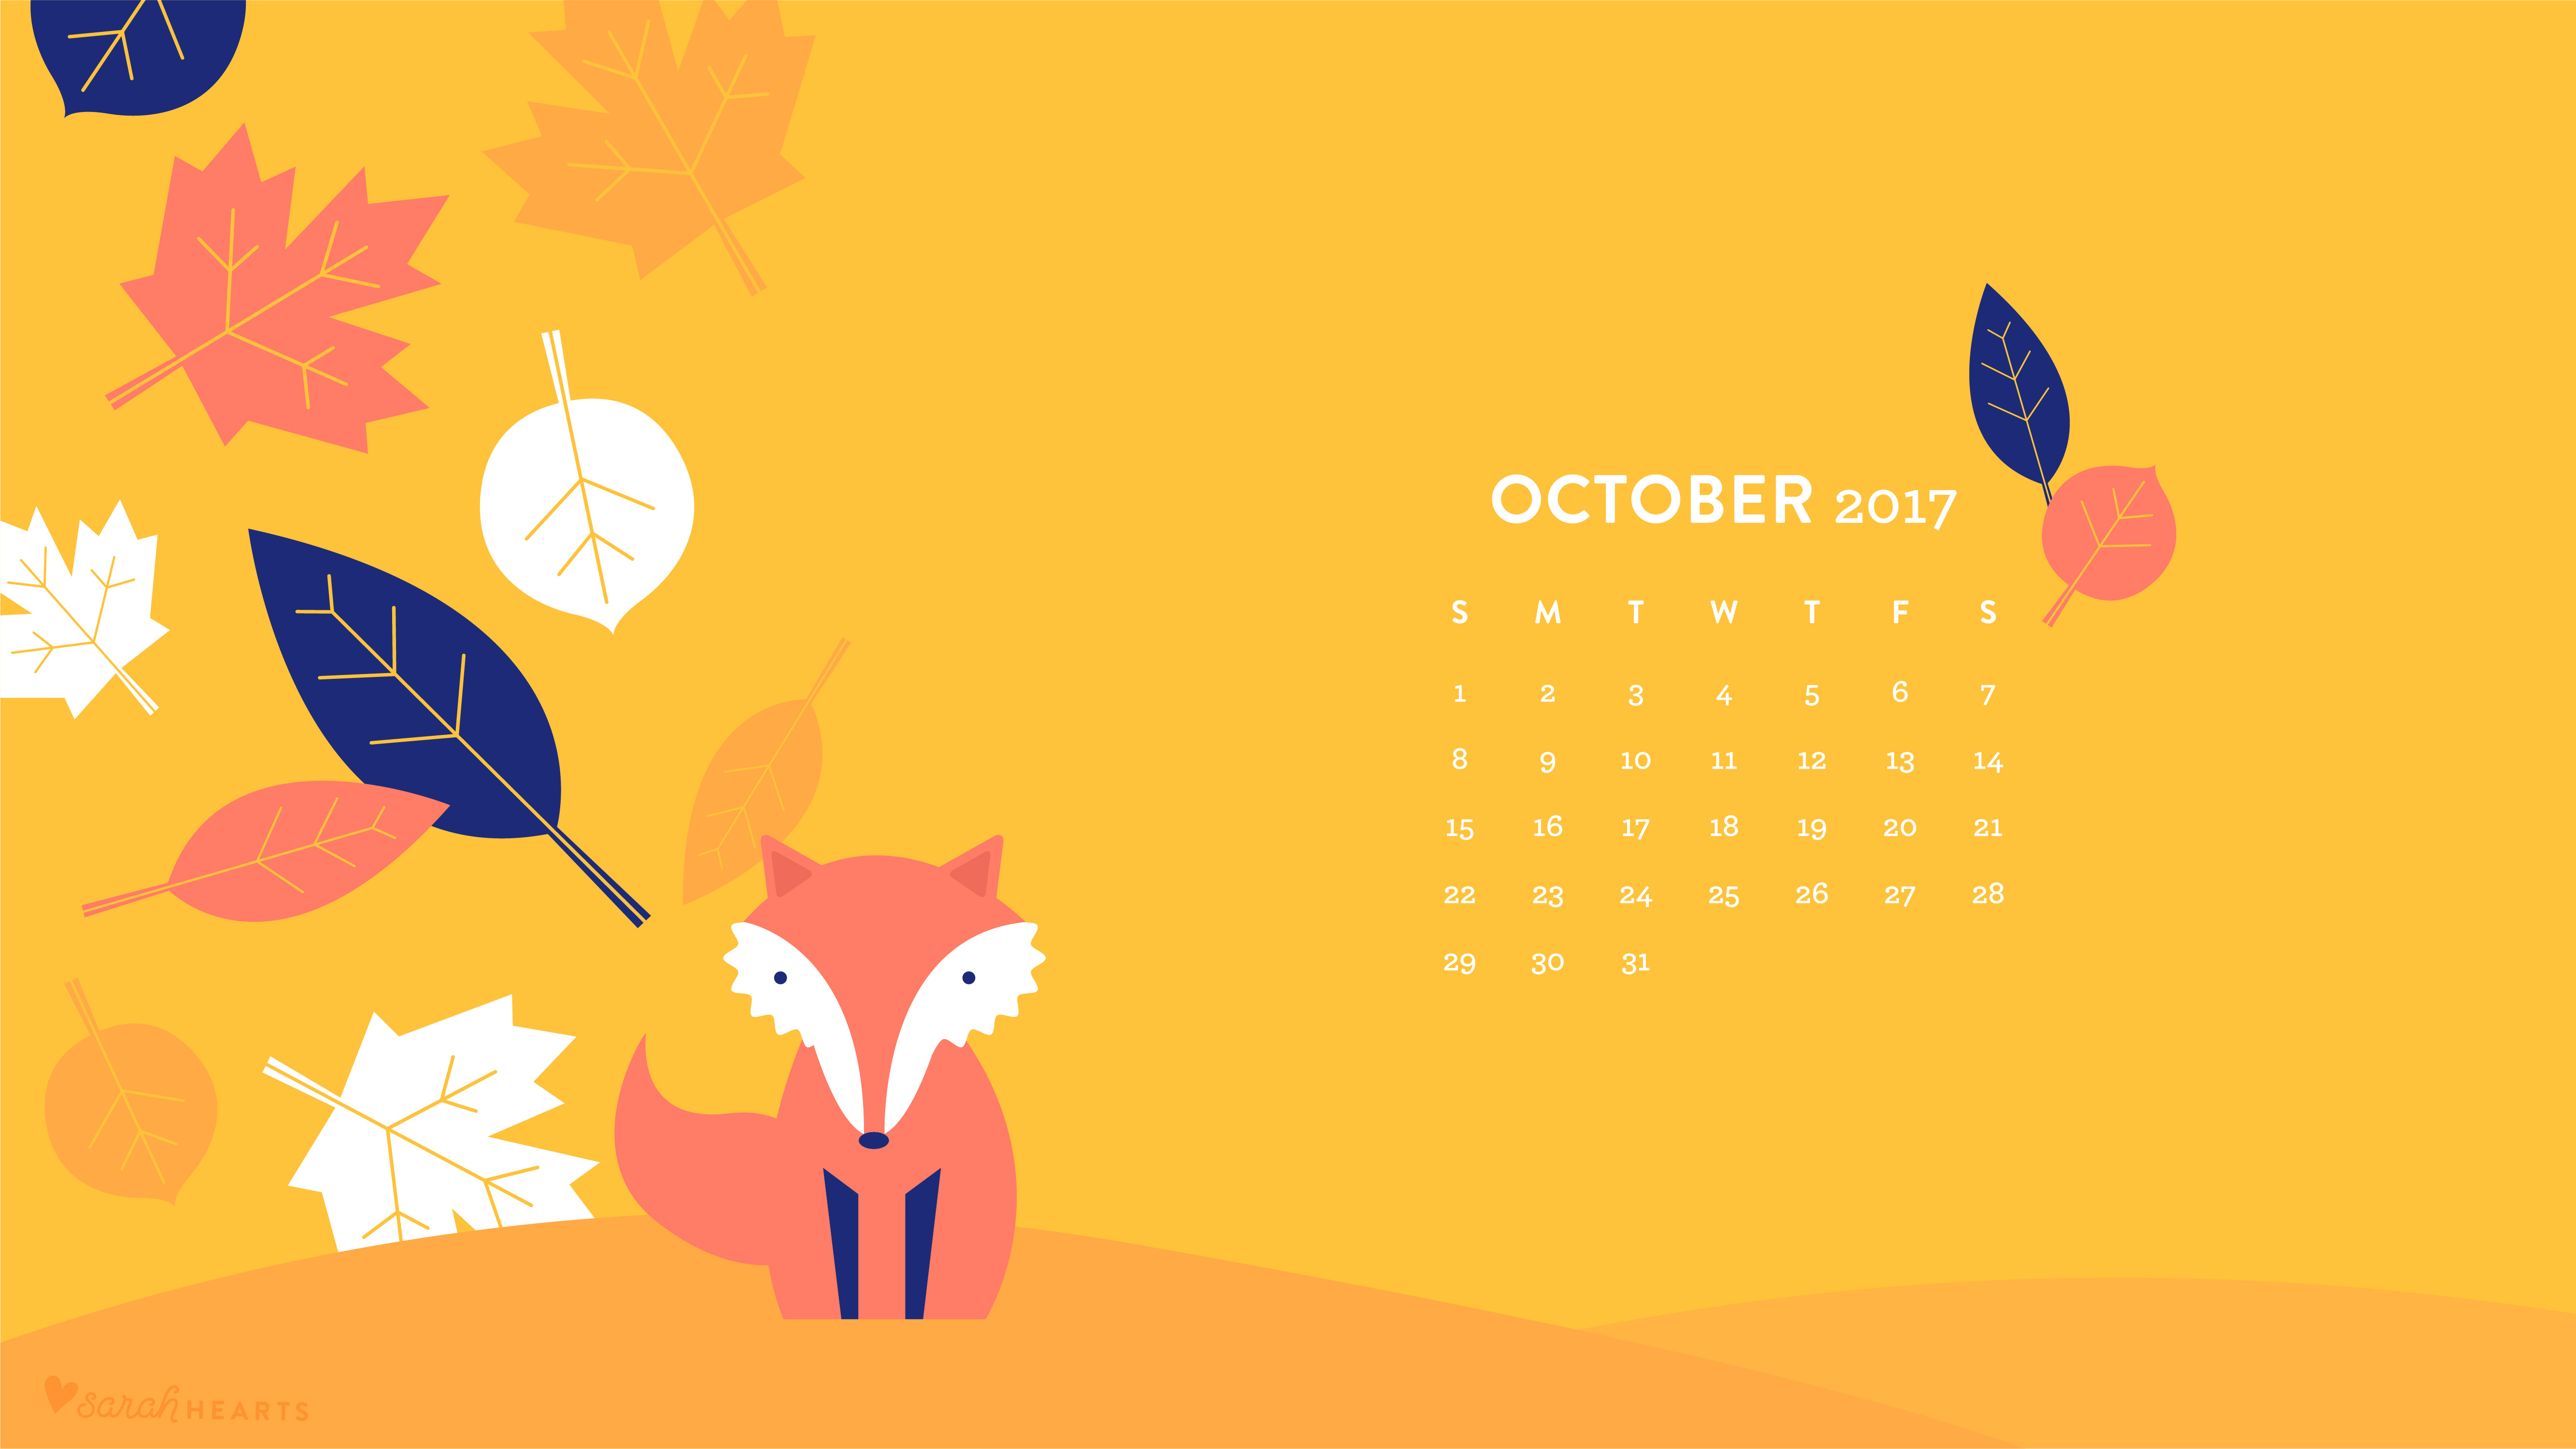 2017 calendar wallpaper,cartoon,illustration,graphic design,fox,tree